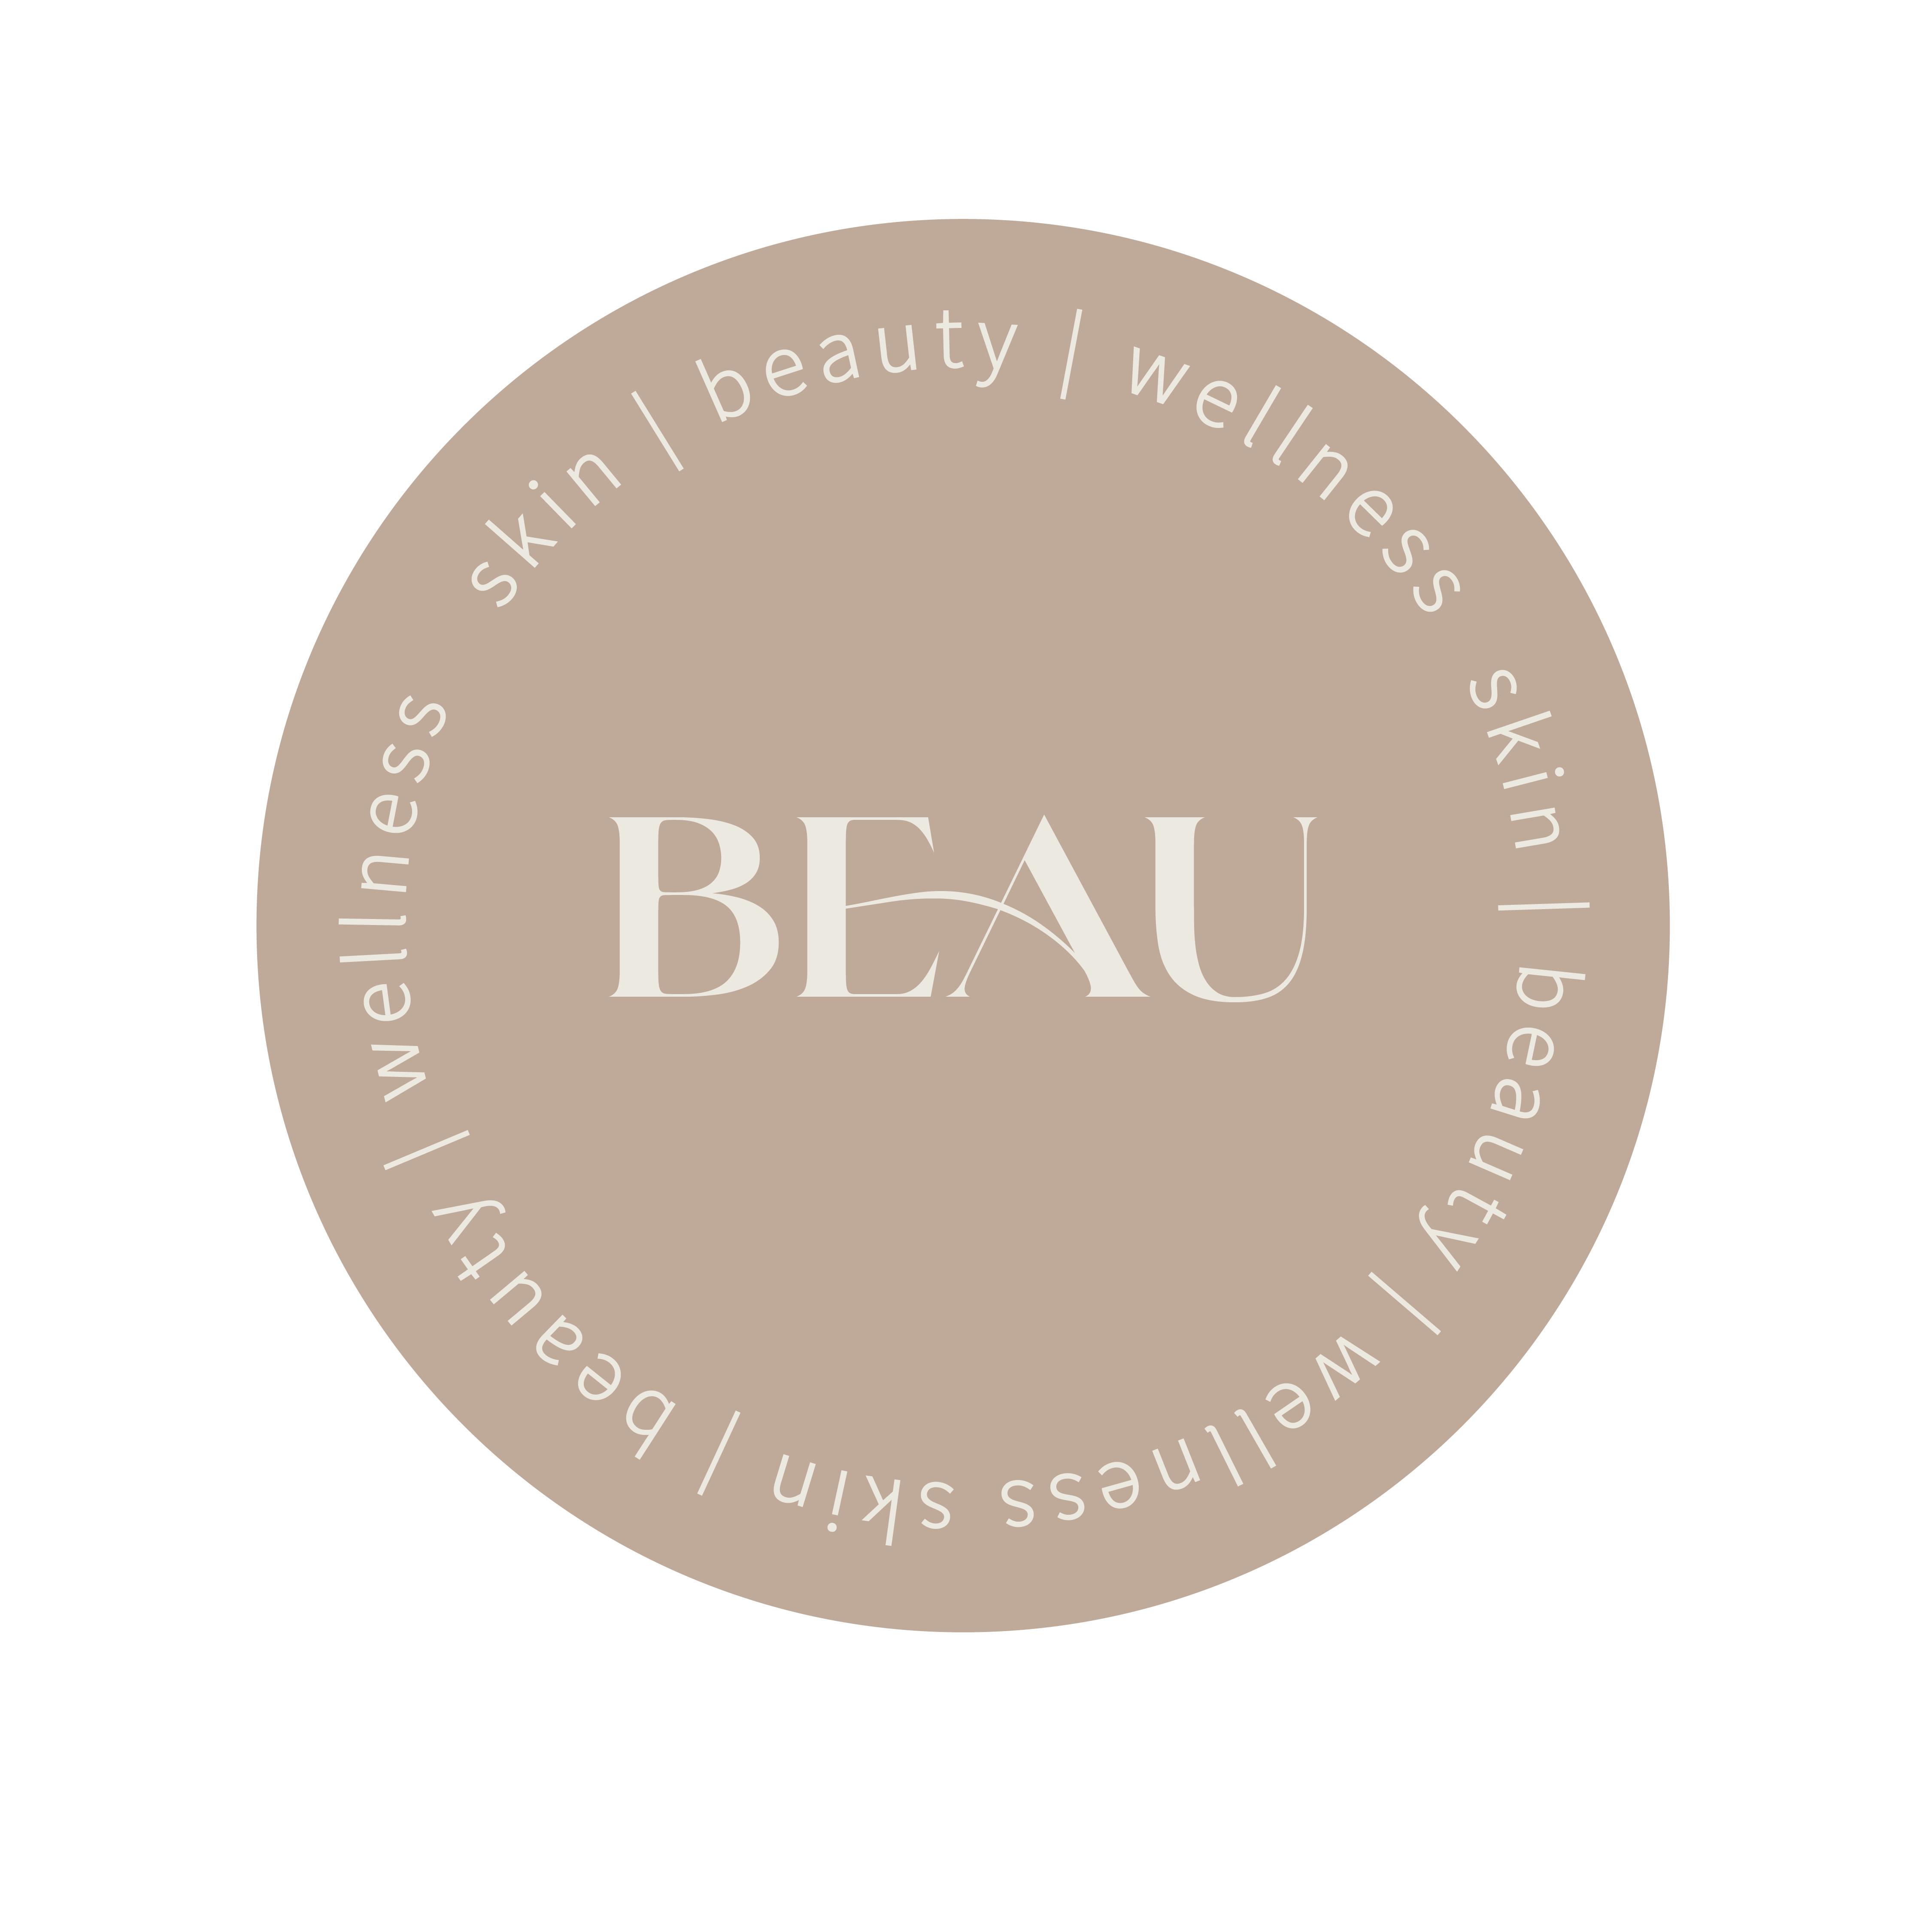 BEAU skin, beauty & wellness